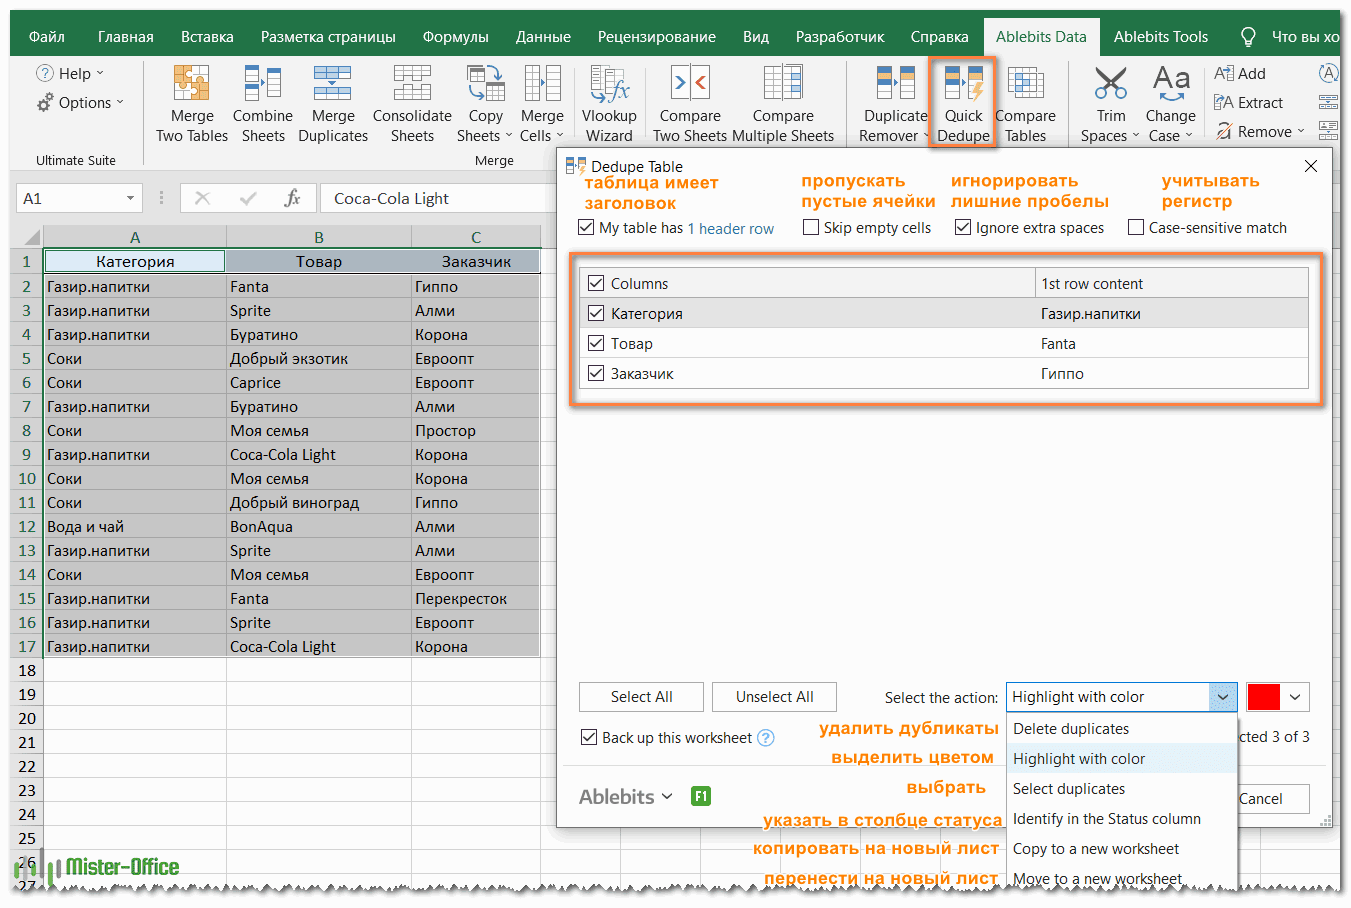 Duplicate Remover - избавиться от дубликатов в Excel в 2 клика мышки